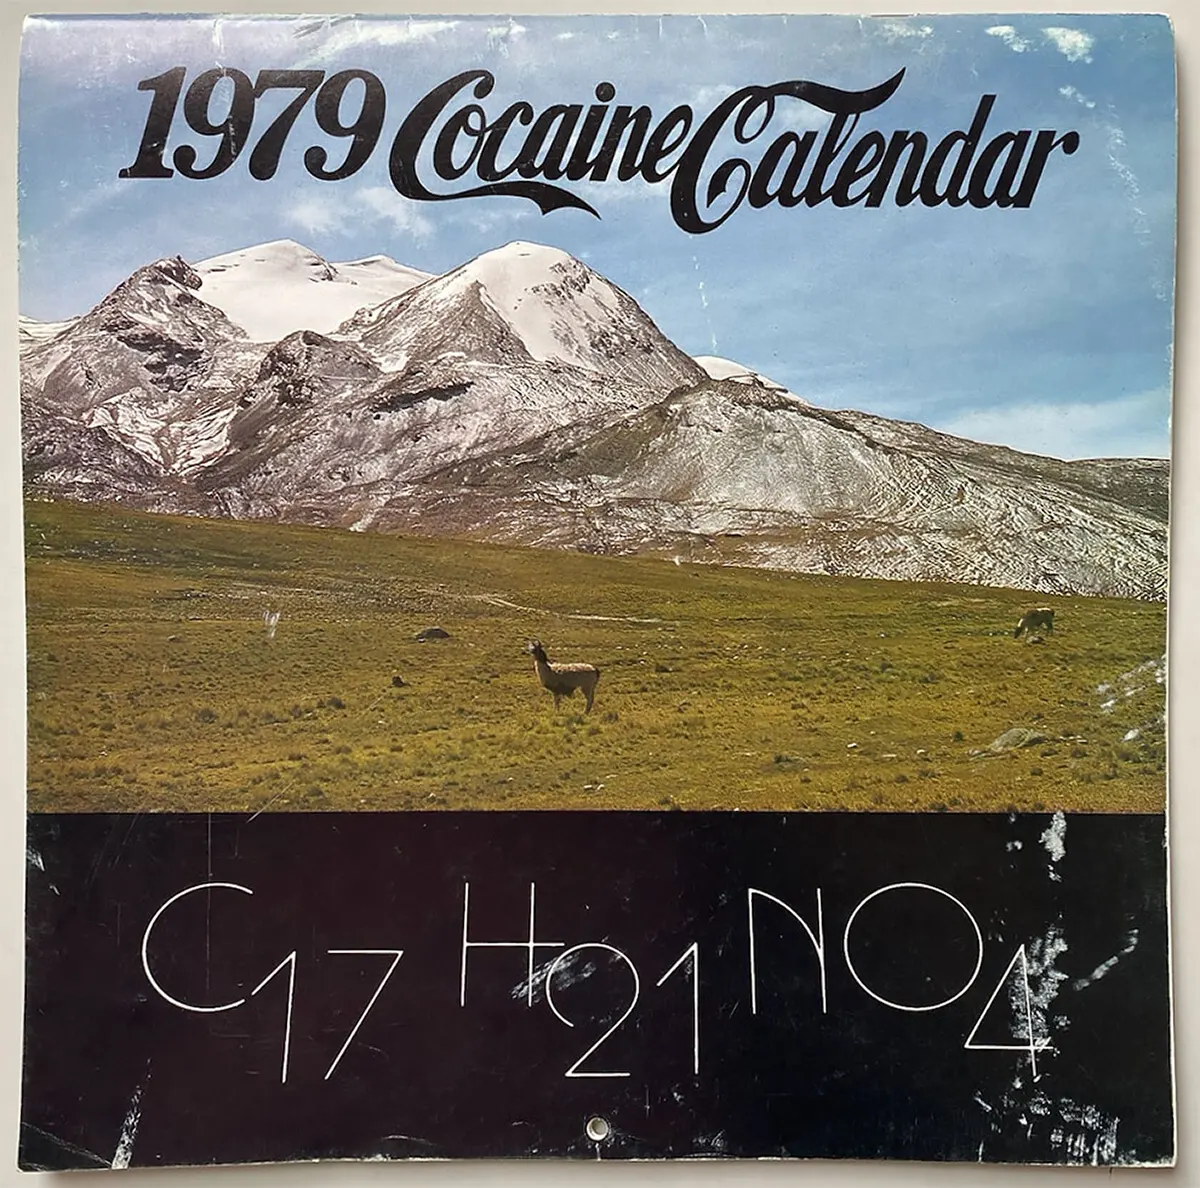 the 1979 cocaine calendar